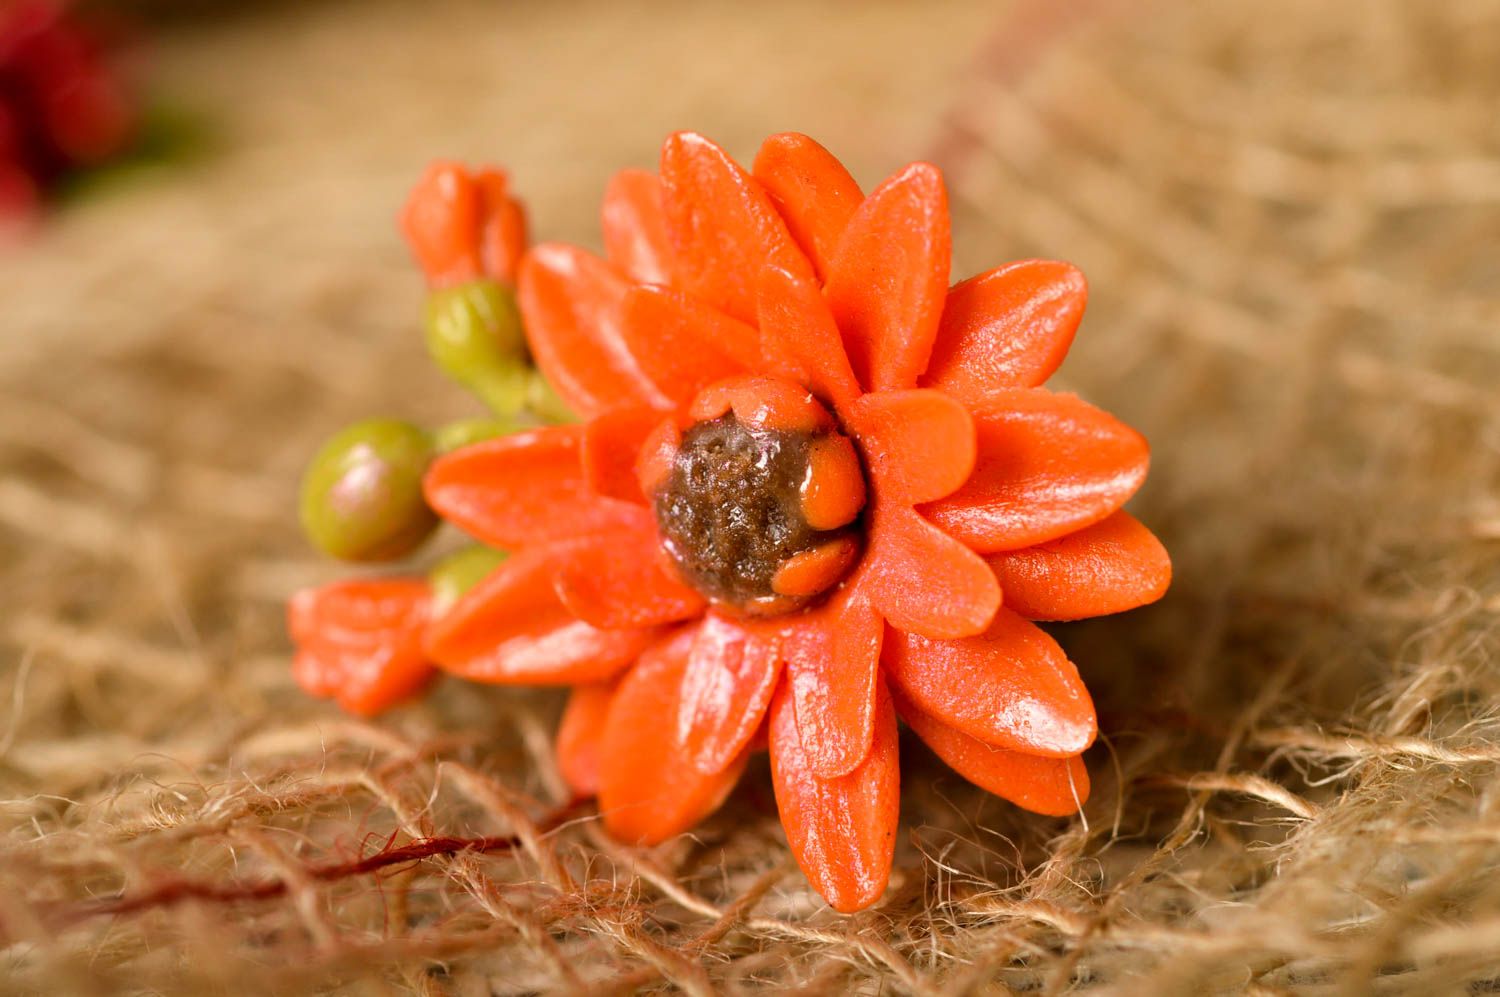 Stylish handmade flower ring artisan jewelry designs handmade accessories photo 1